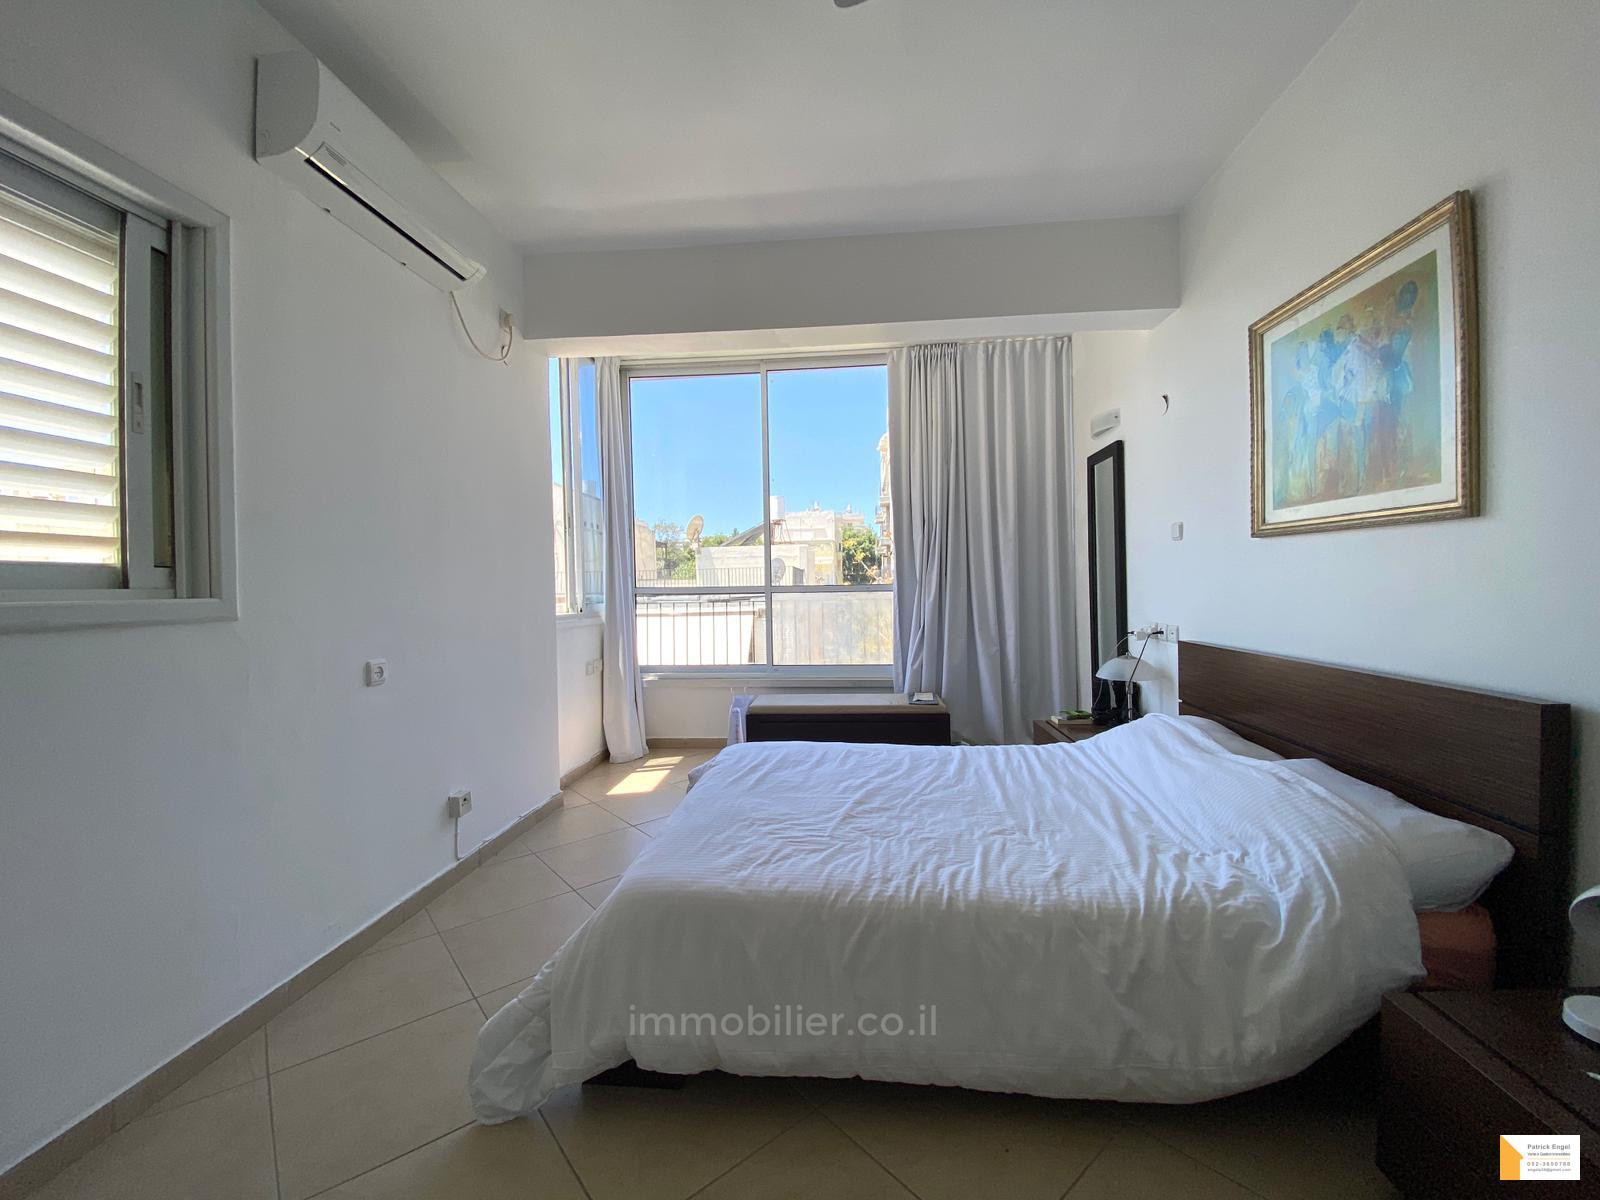 Квартира 2 комнат(-ы)  Tel Aviv рядом с морем 232-IBL-3695